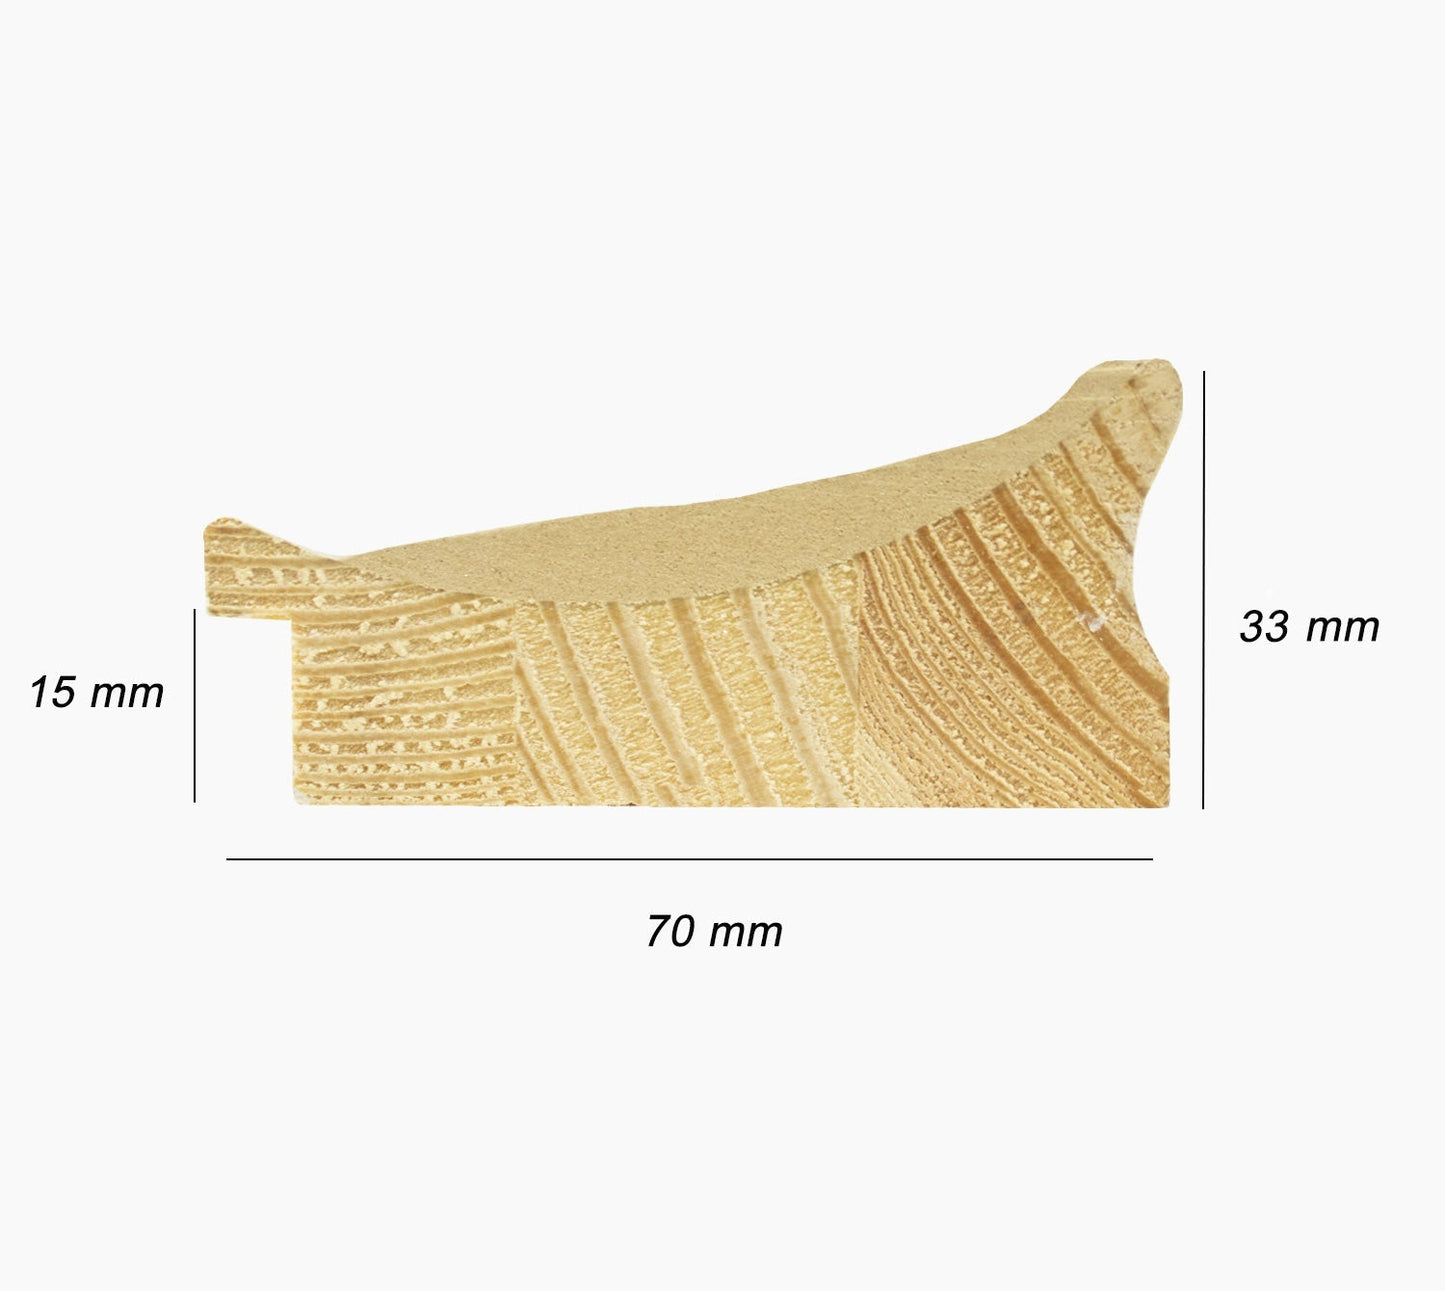 301.011 cadre en bois à la feuille d'argent mesure de profil 70x33 mm Lombarda cornici S.n.c.